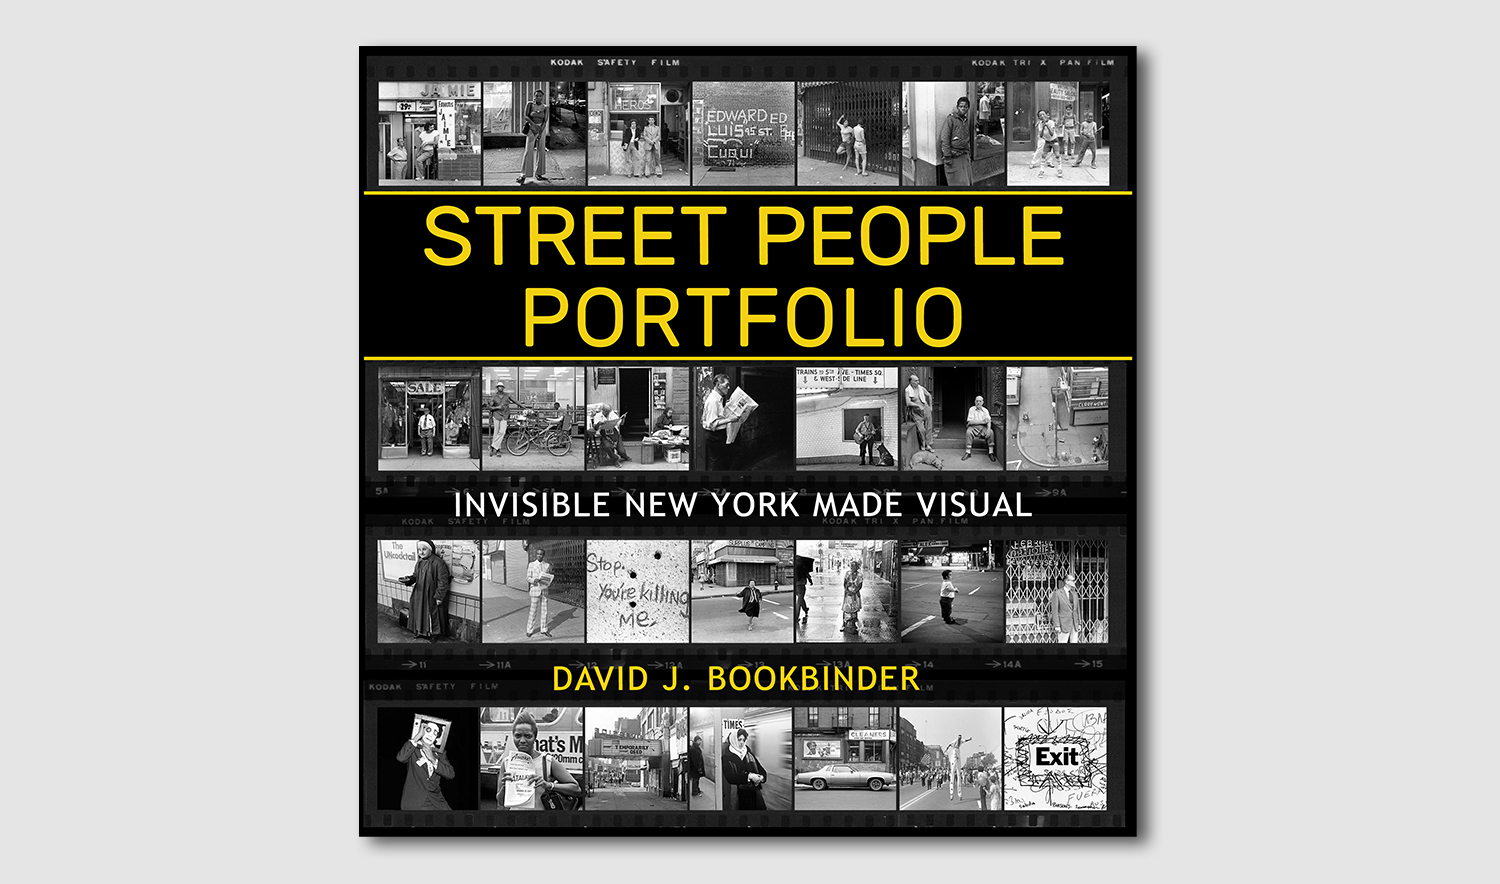 David Bookbinder - Invisible New York Made Visual